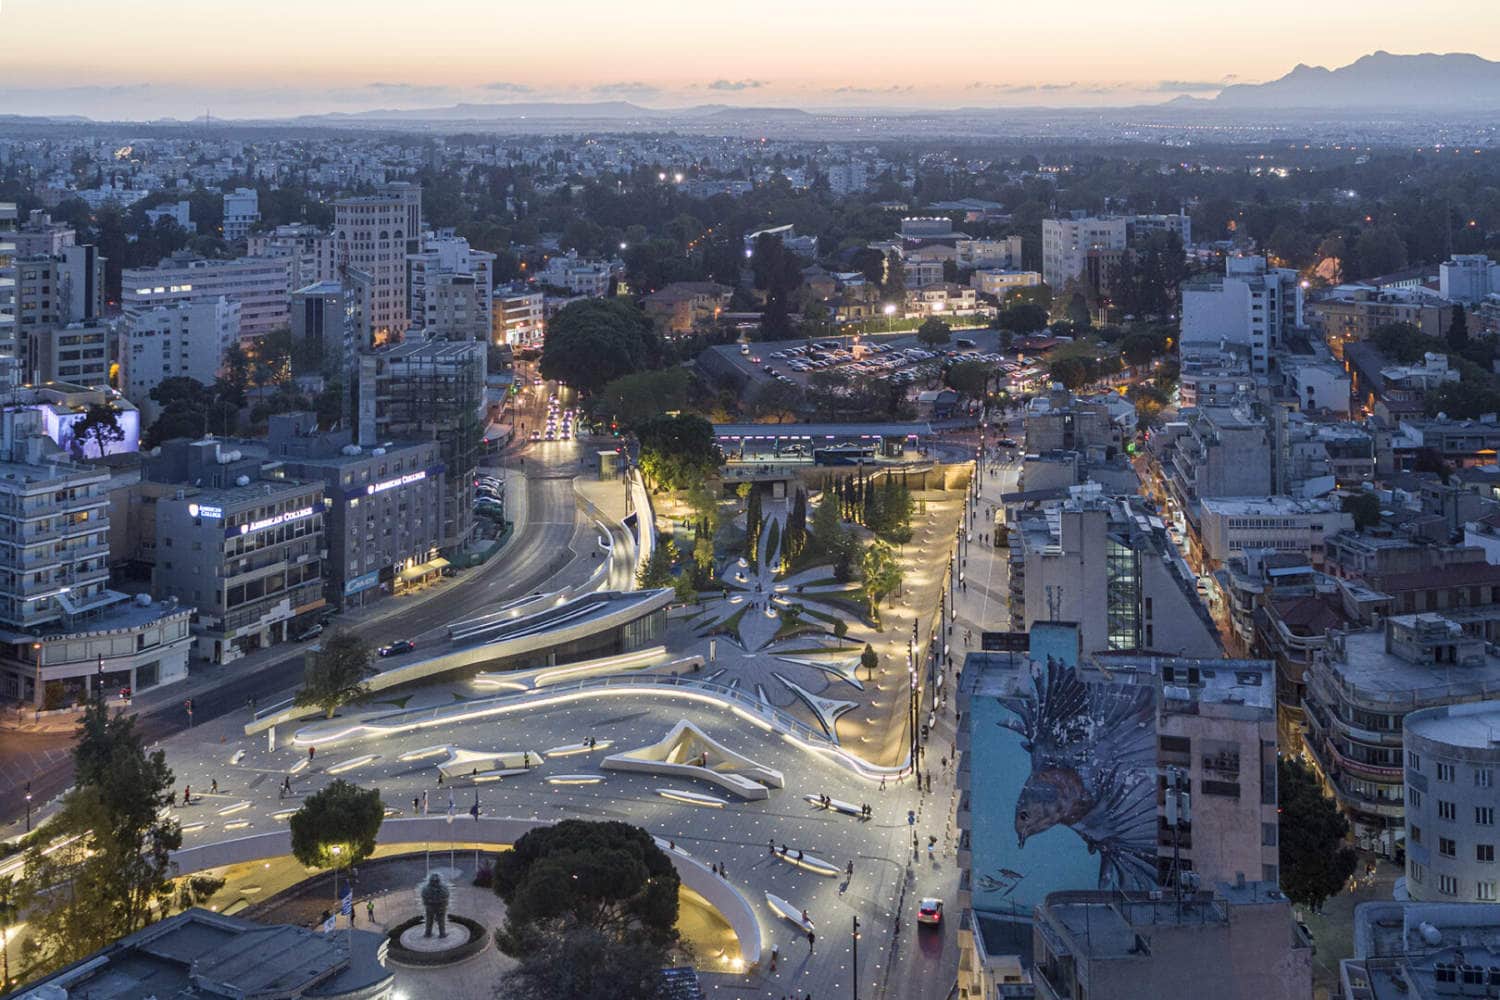 Eleftheria Square by Zaha Hadid Architects